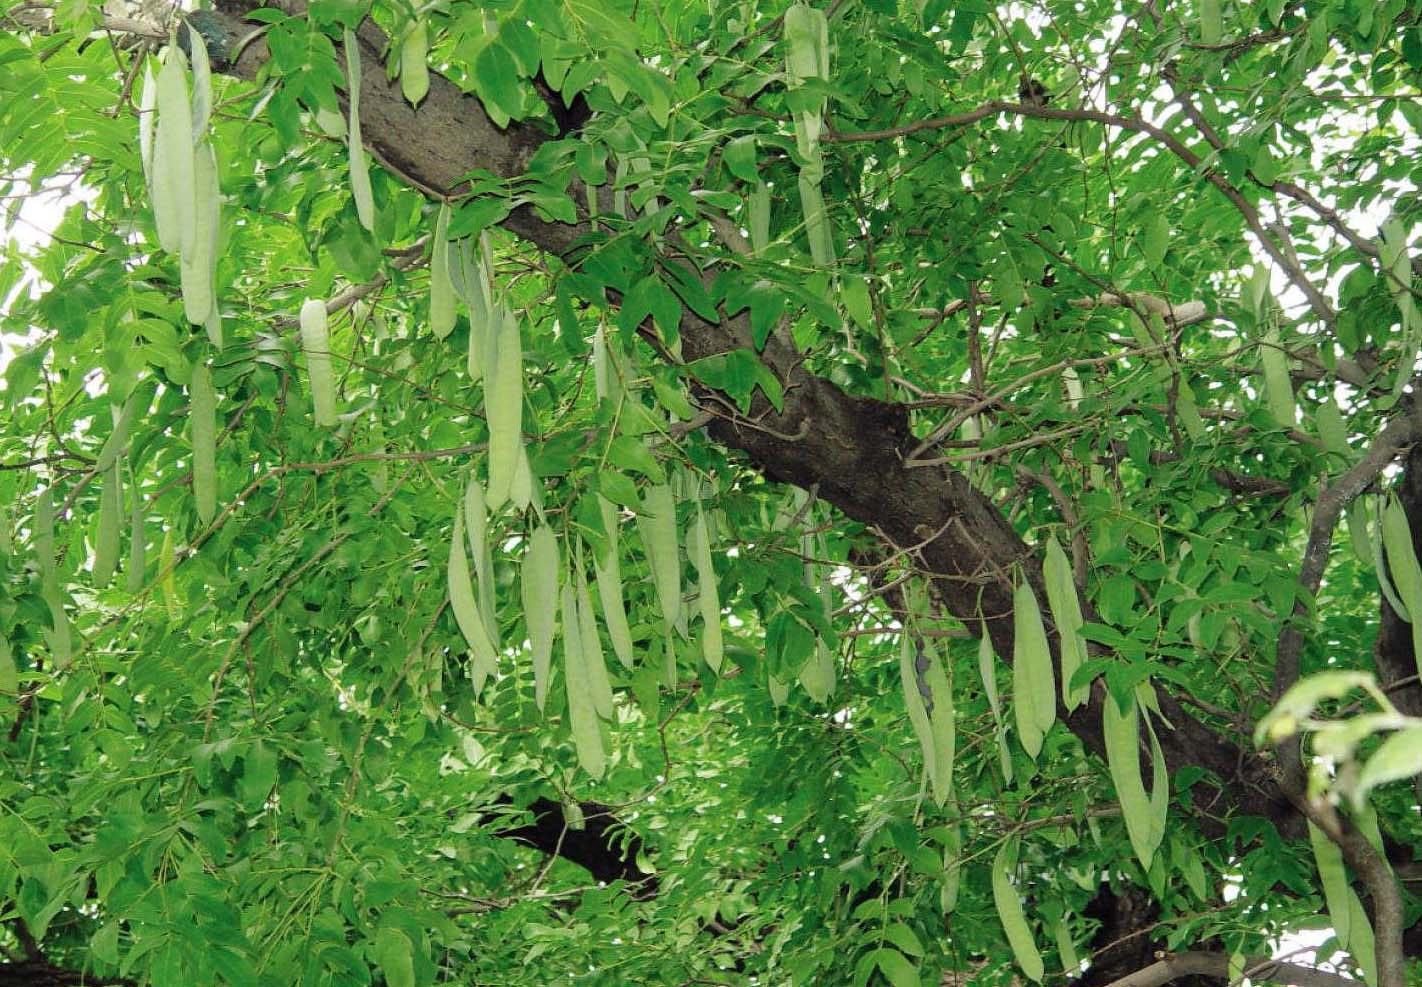 皂角树有几种品种图片图片